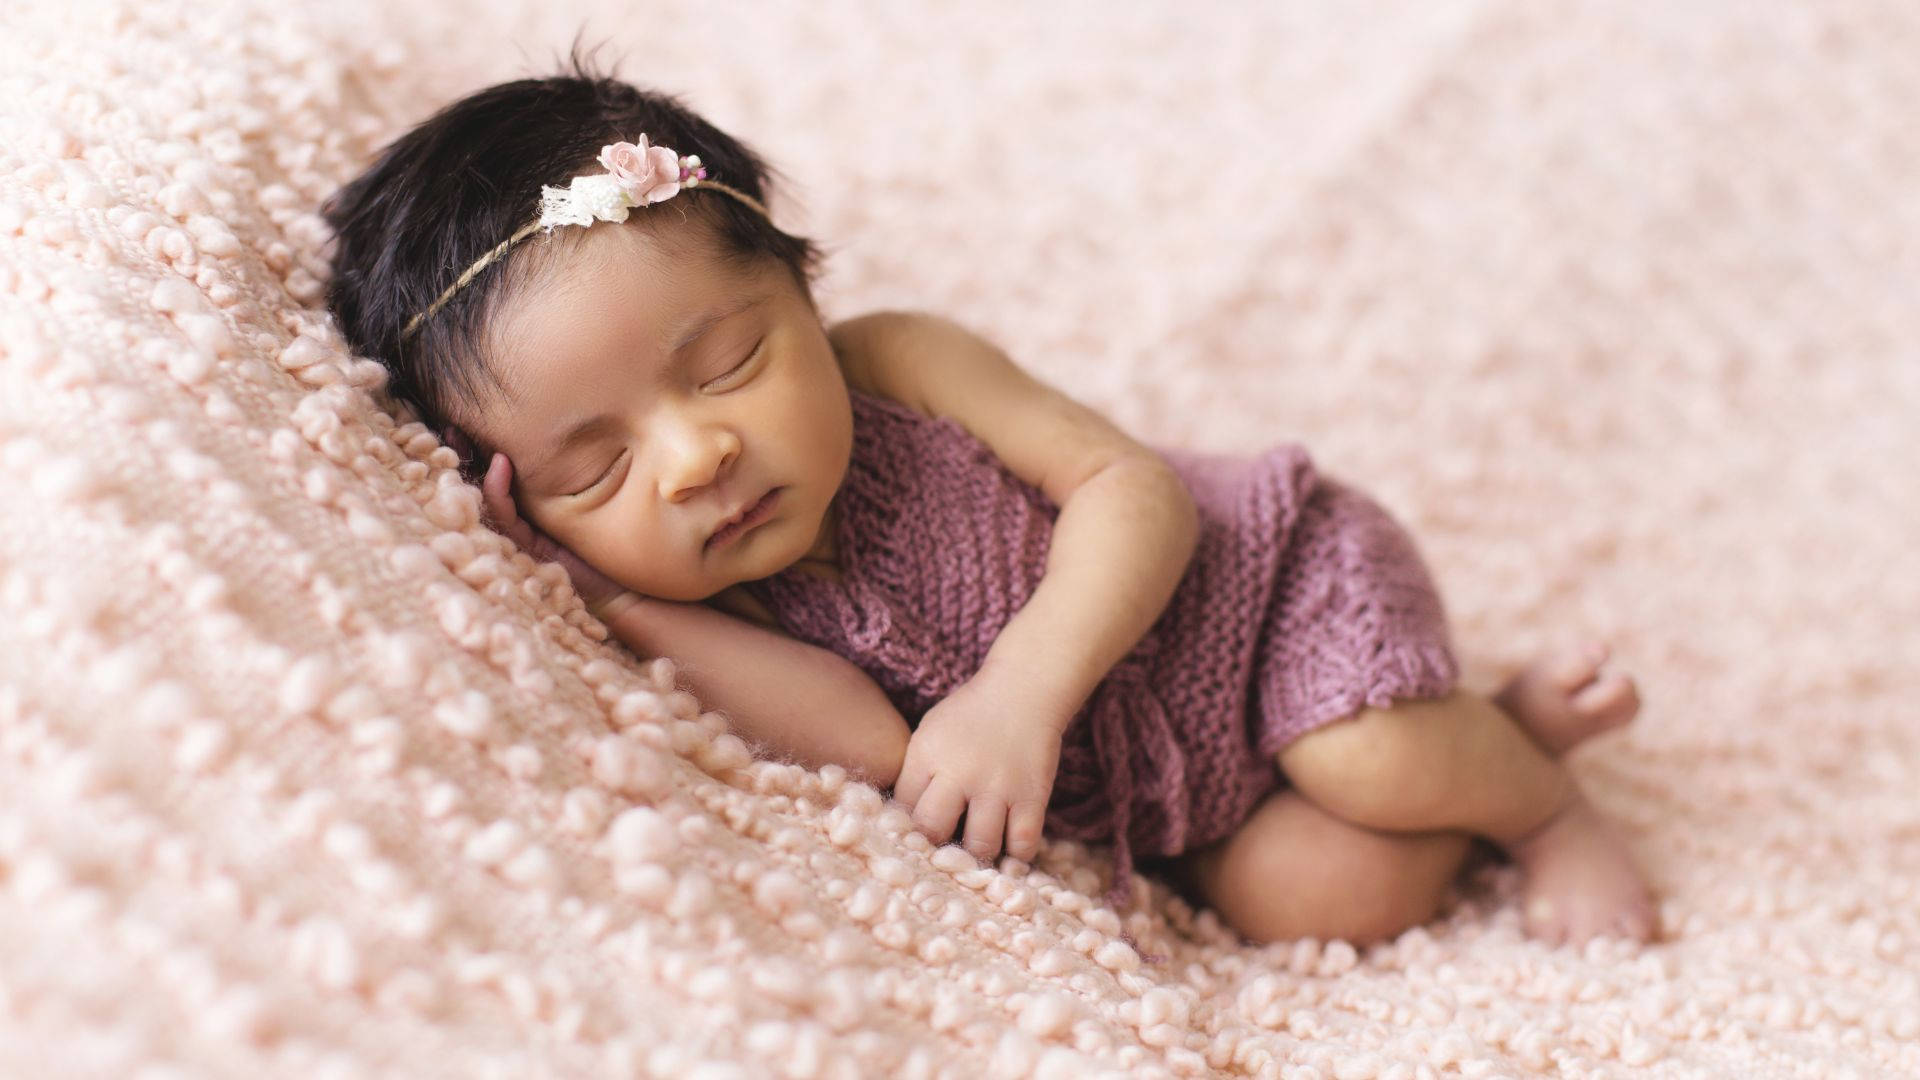 Babyfotografiemit Rosa Gehäkeltem Kleidchen Wallpaper